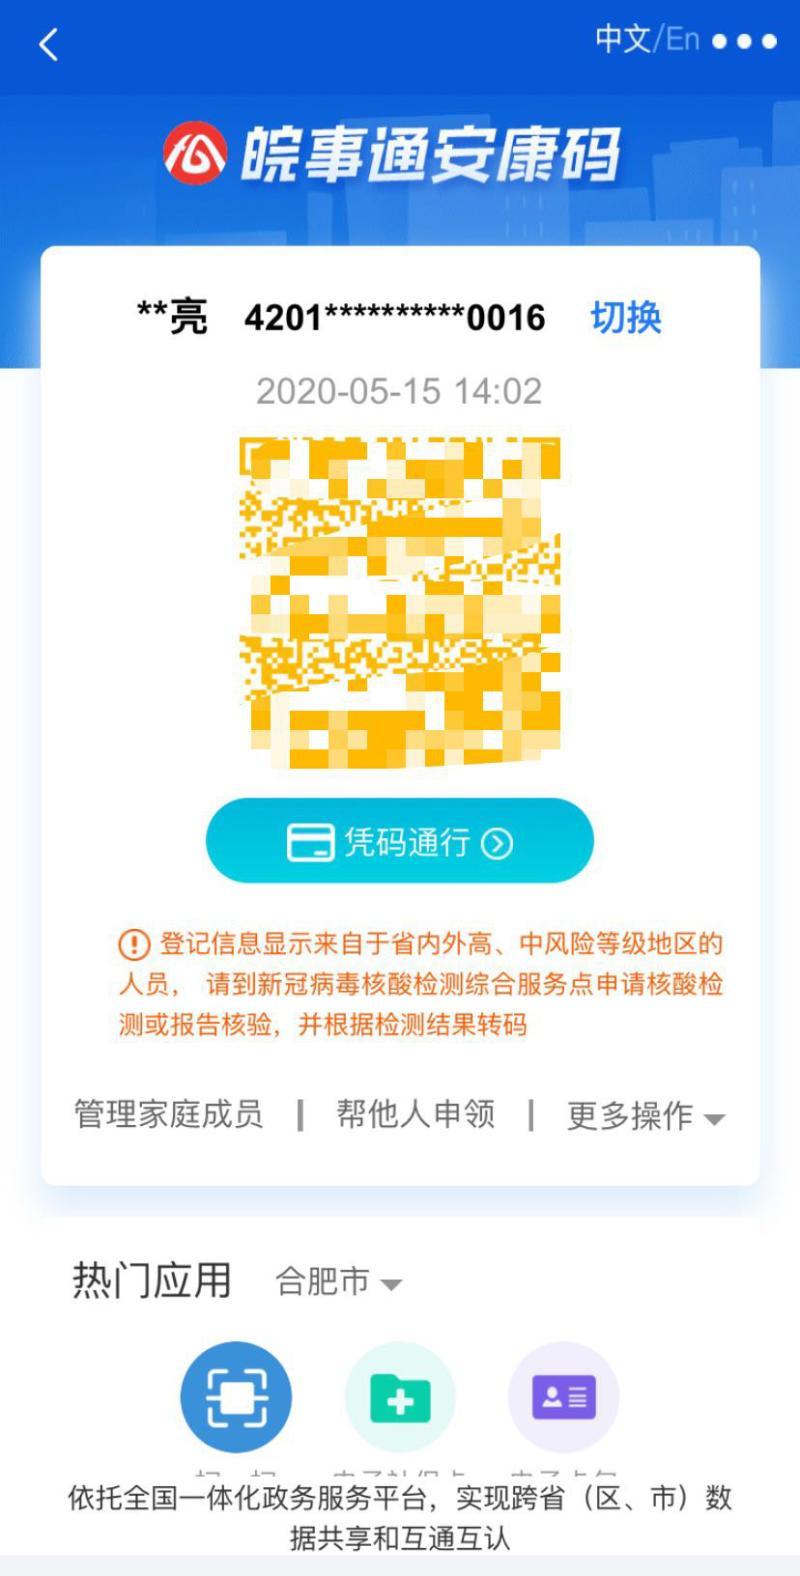 武汉人员当前申请安徽的"皖事通安康码"就默认显示为黄码.